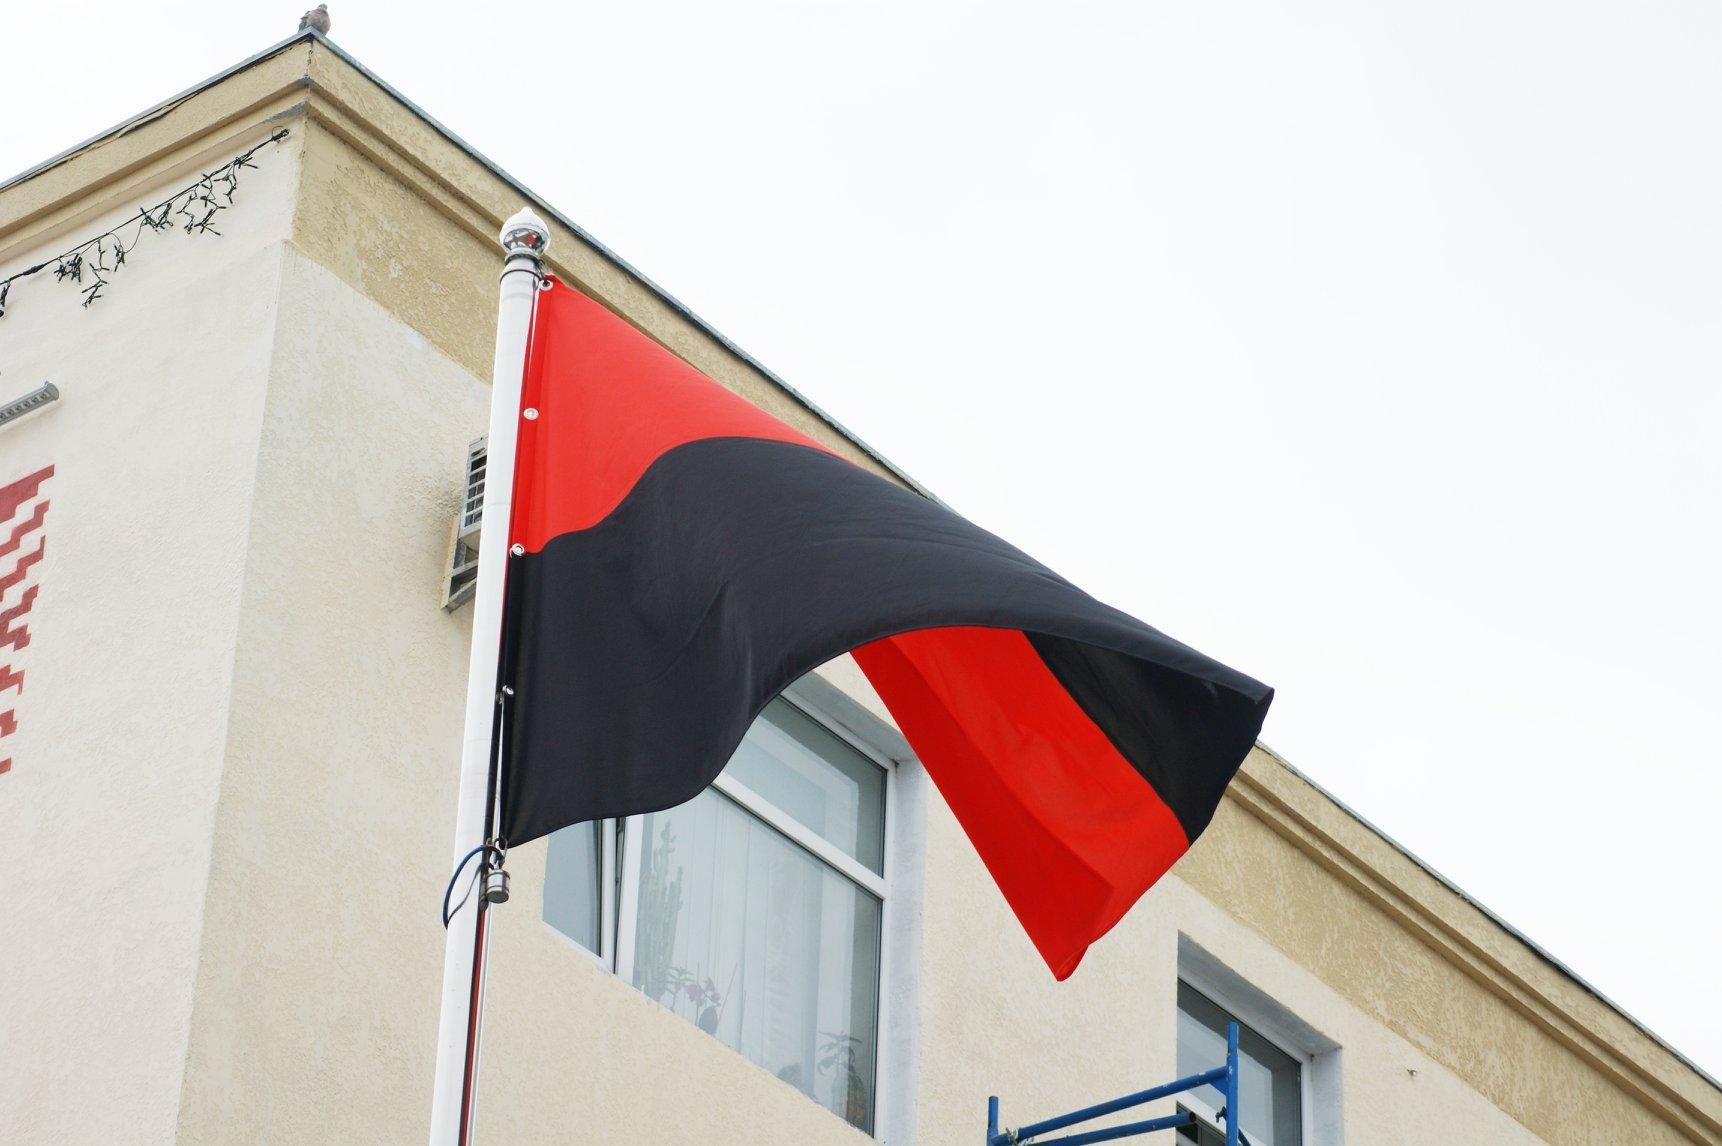 Школам Чернівців рекомендують вивішувати червоно-чорний прапор на фасадах - Новини Чернівців - Освіта